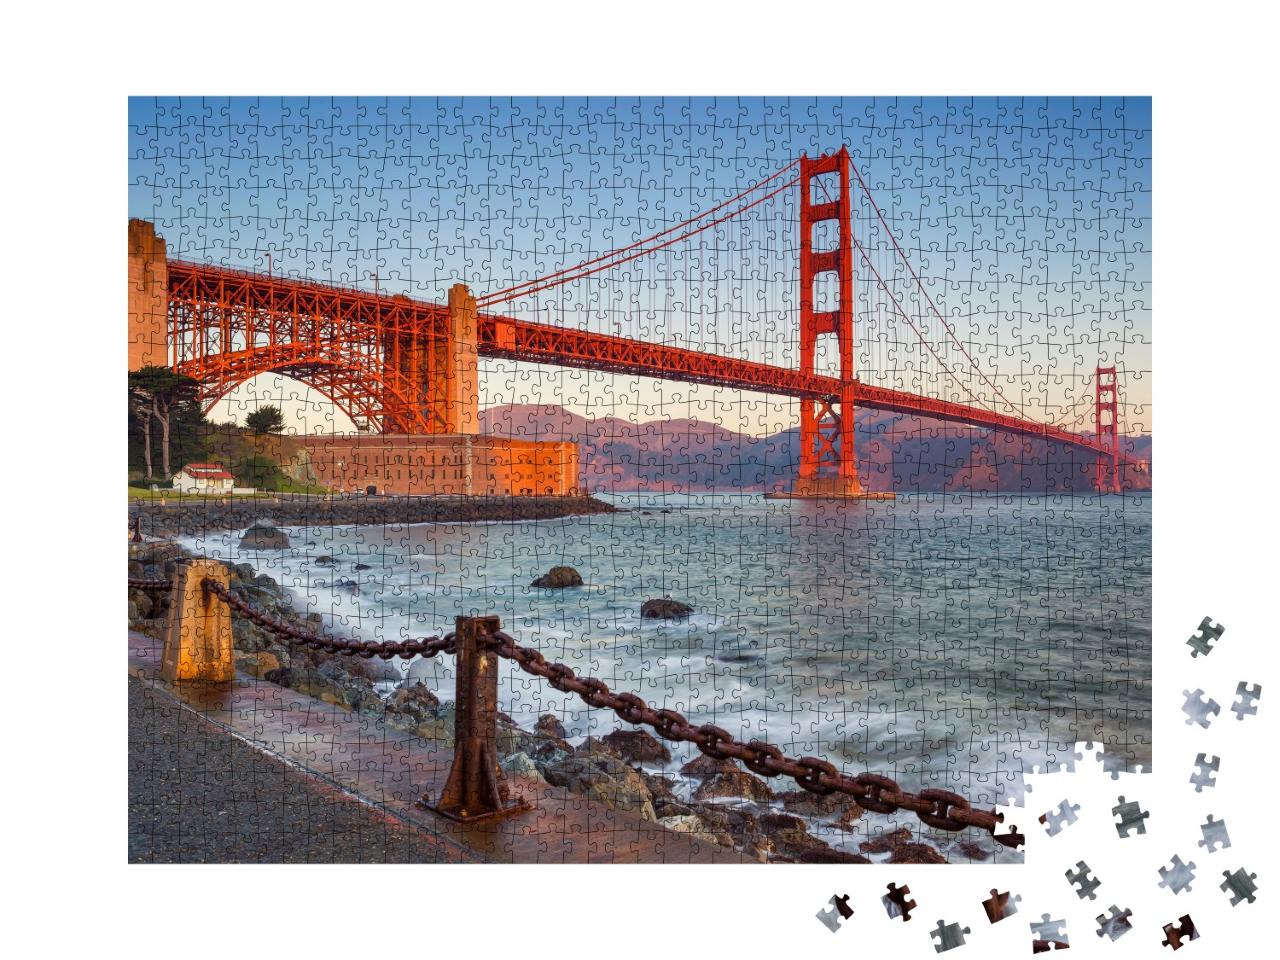 Puzzle de 1000 pièces « Golden Gate Bridge au lever du soleil, San Francisco »